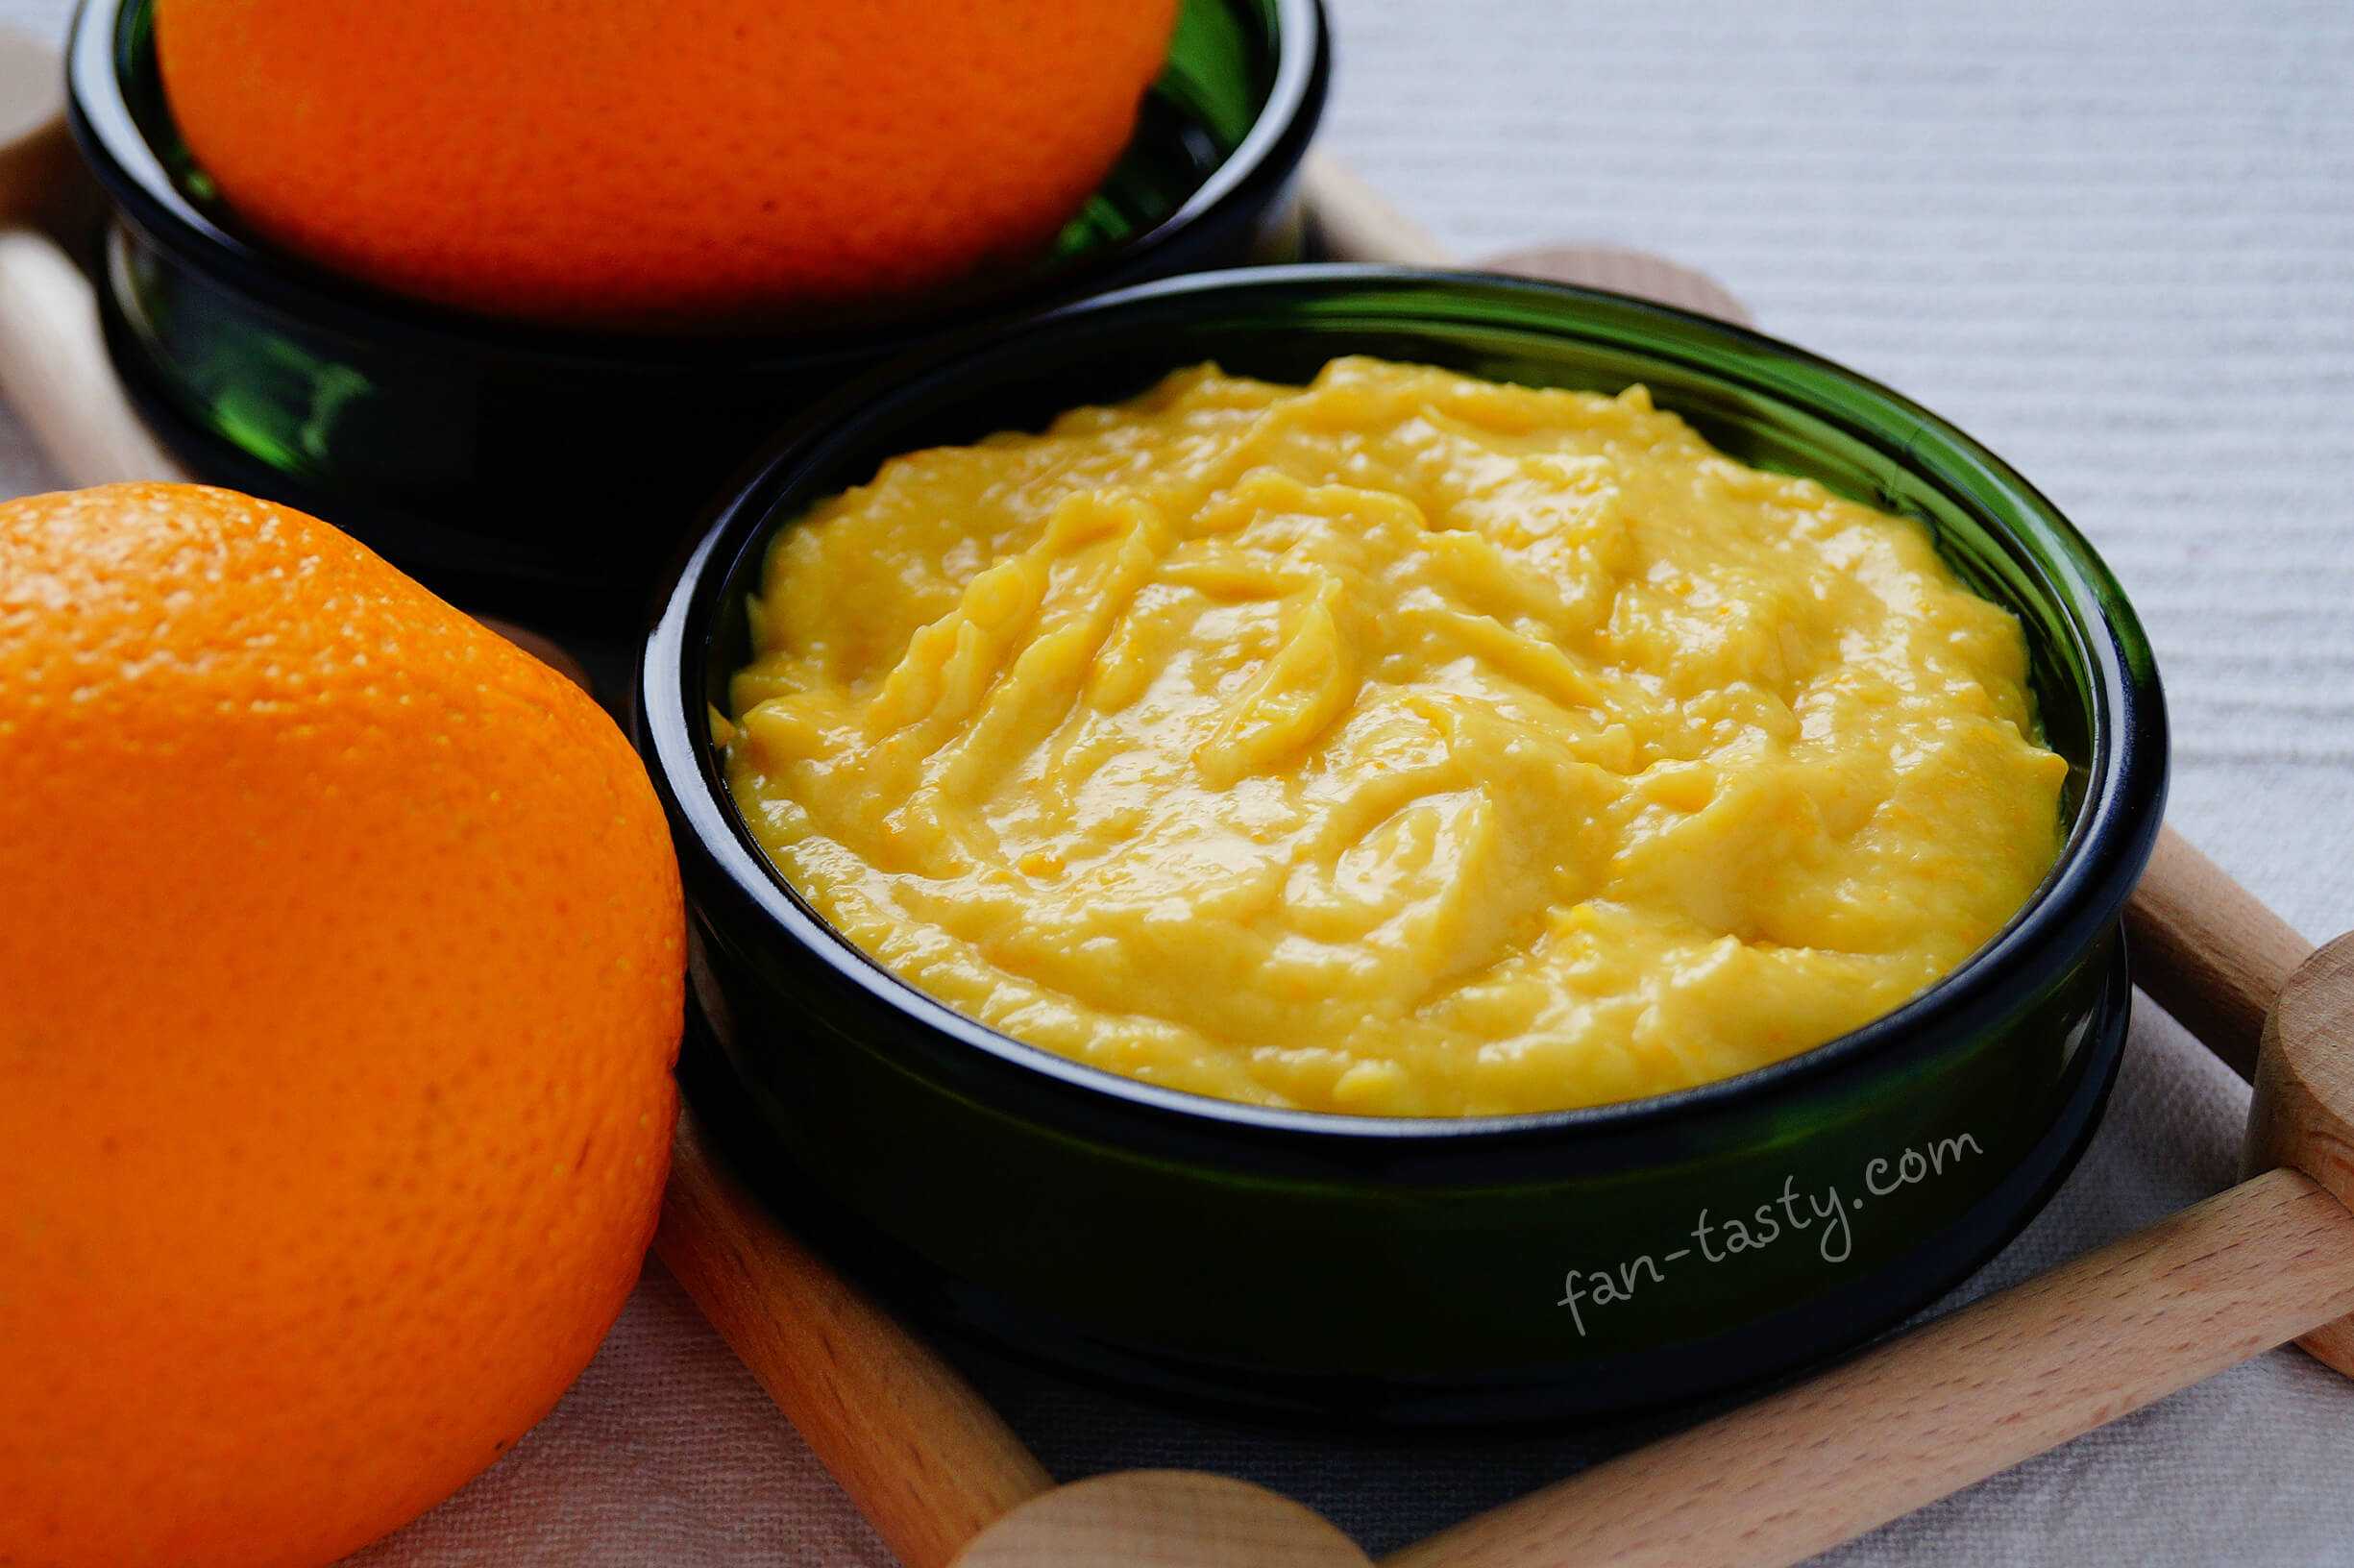 Тыквенный сок с апельсином - 5 рецептов в домашних условиях с пошаговыми фото